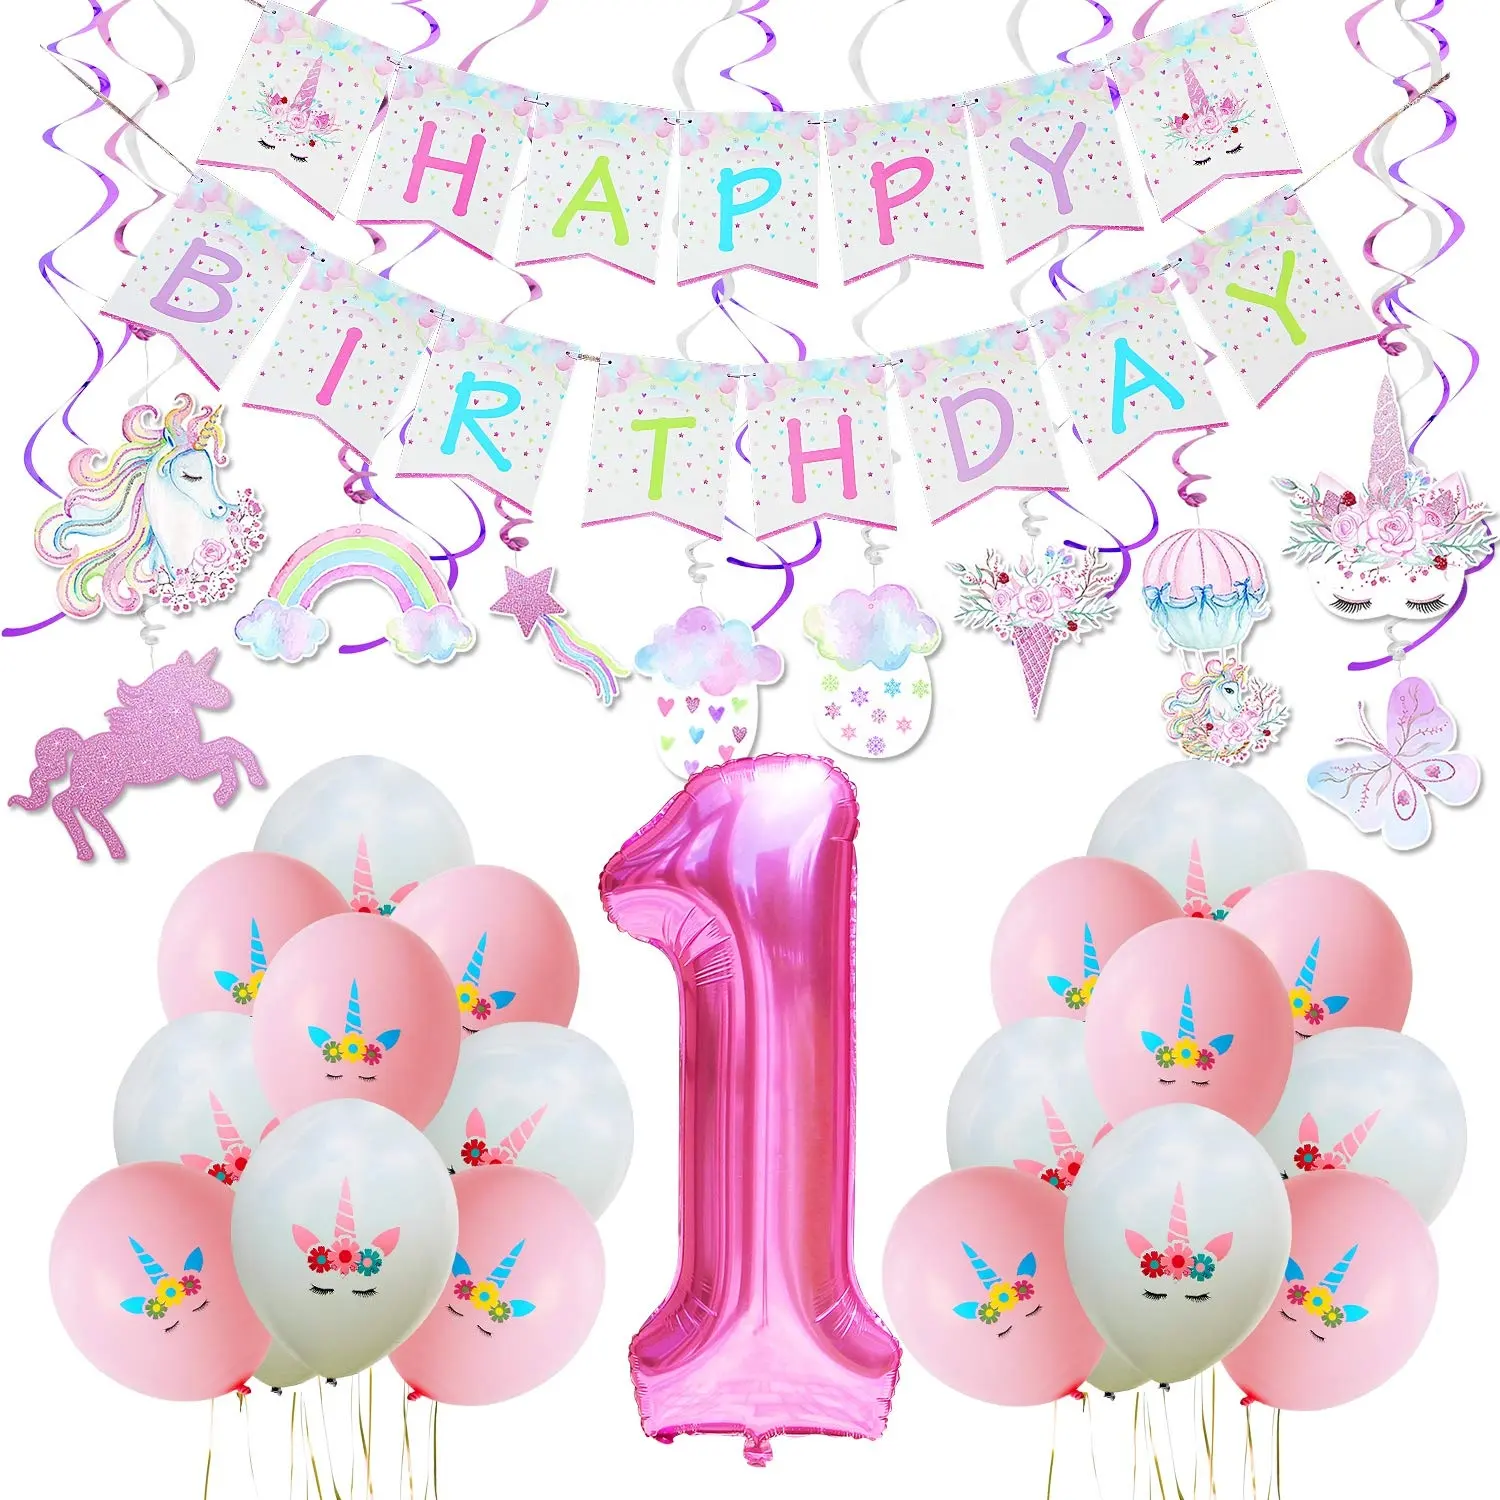 Nicro-Set de decoración para fiesta de cumpleaños de niña, suministros de decoración de remolino de papel colgante, tema de unicornio rosa, 54 Uds.